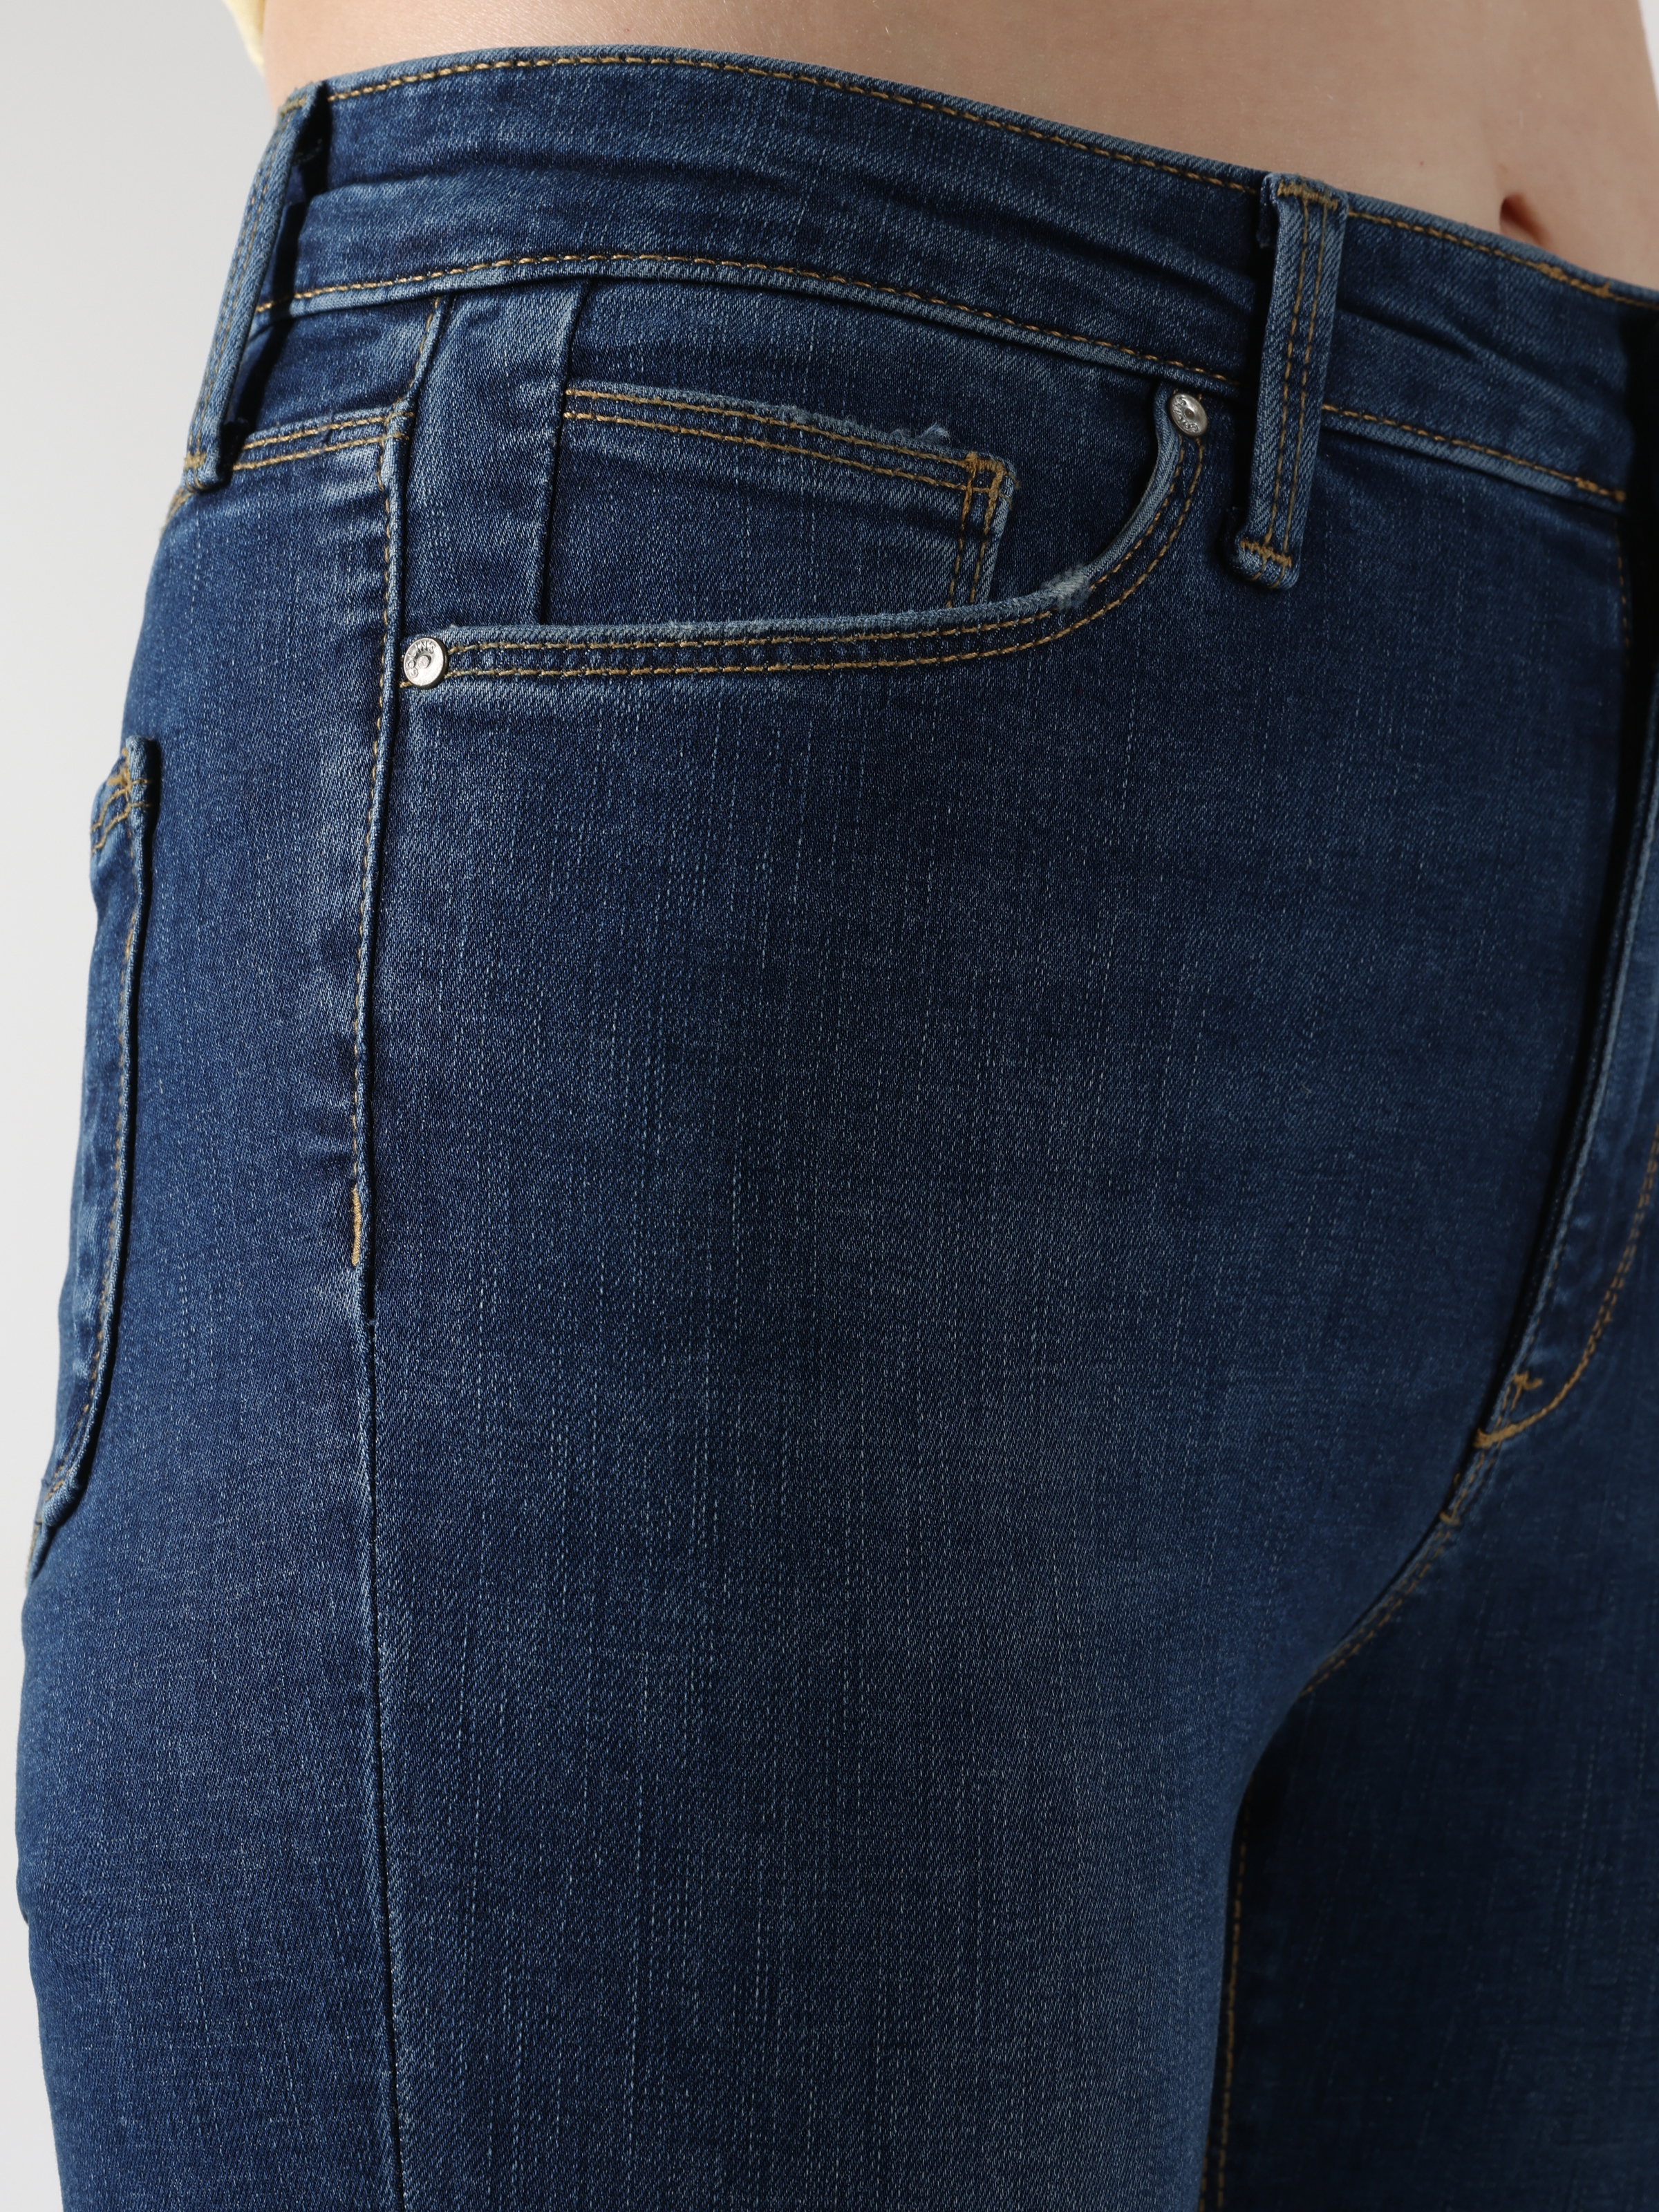 Afișați detalii pentru Pantaloni De Dama Denim Skinny Fit 759 LARA